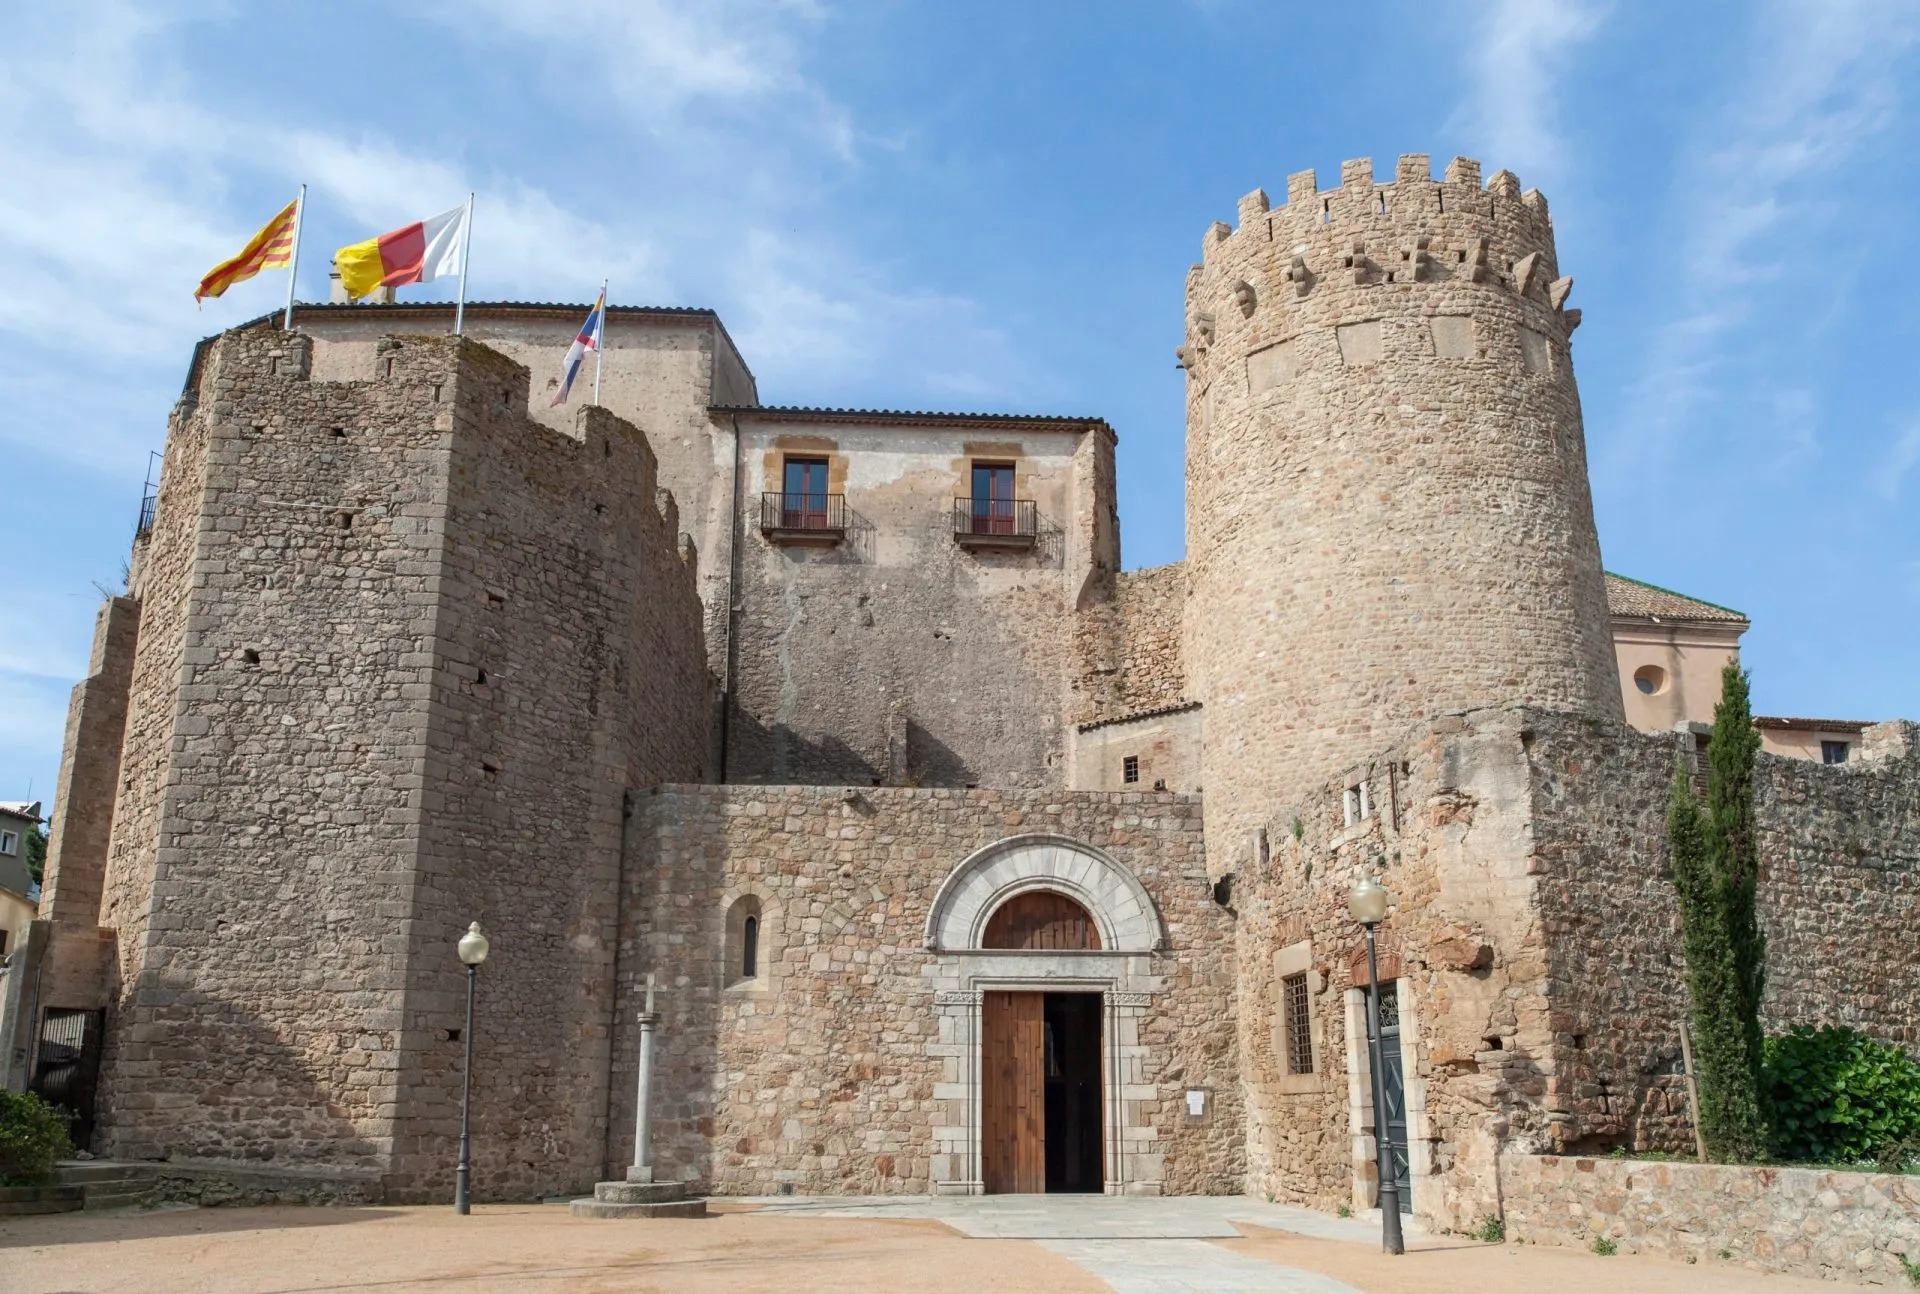 Monastero benedettino, costruzione medievale, Sant Feliu de Guixols, Costa Brava, provincia di Girona, Catalogna, Spagna.